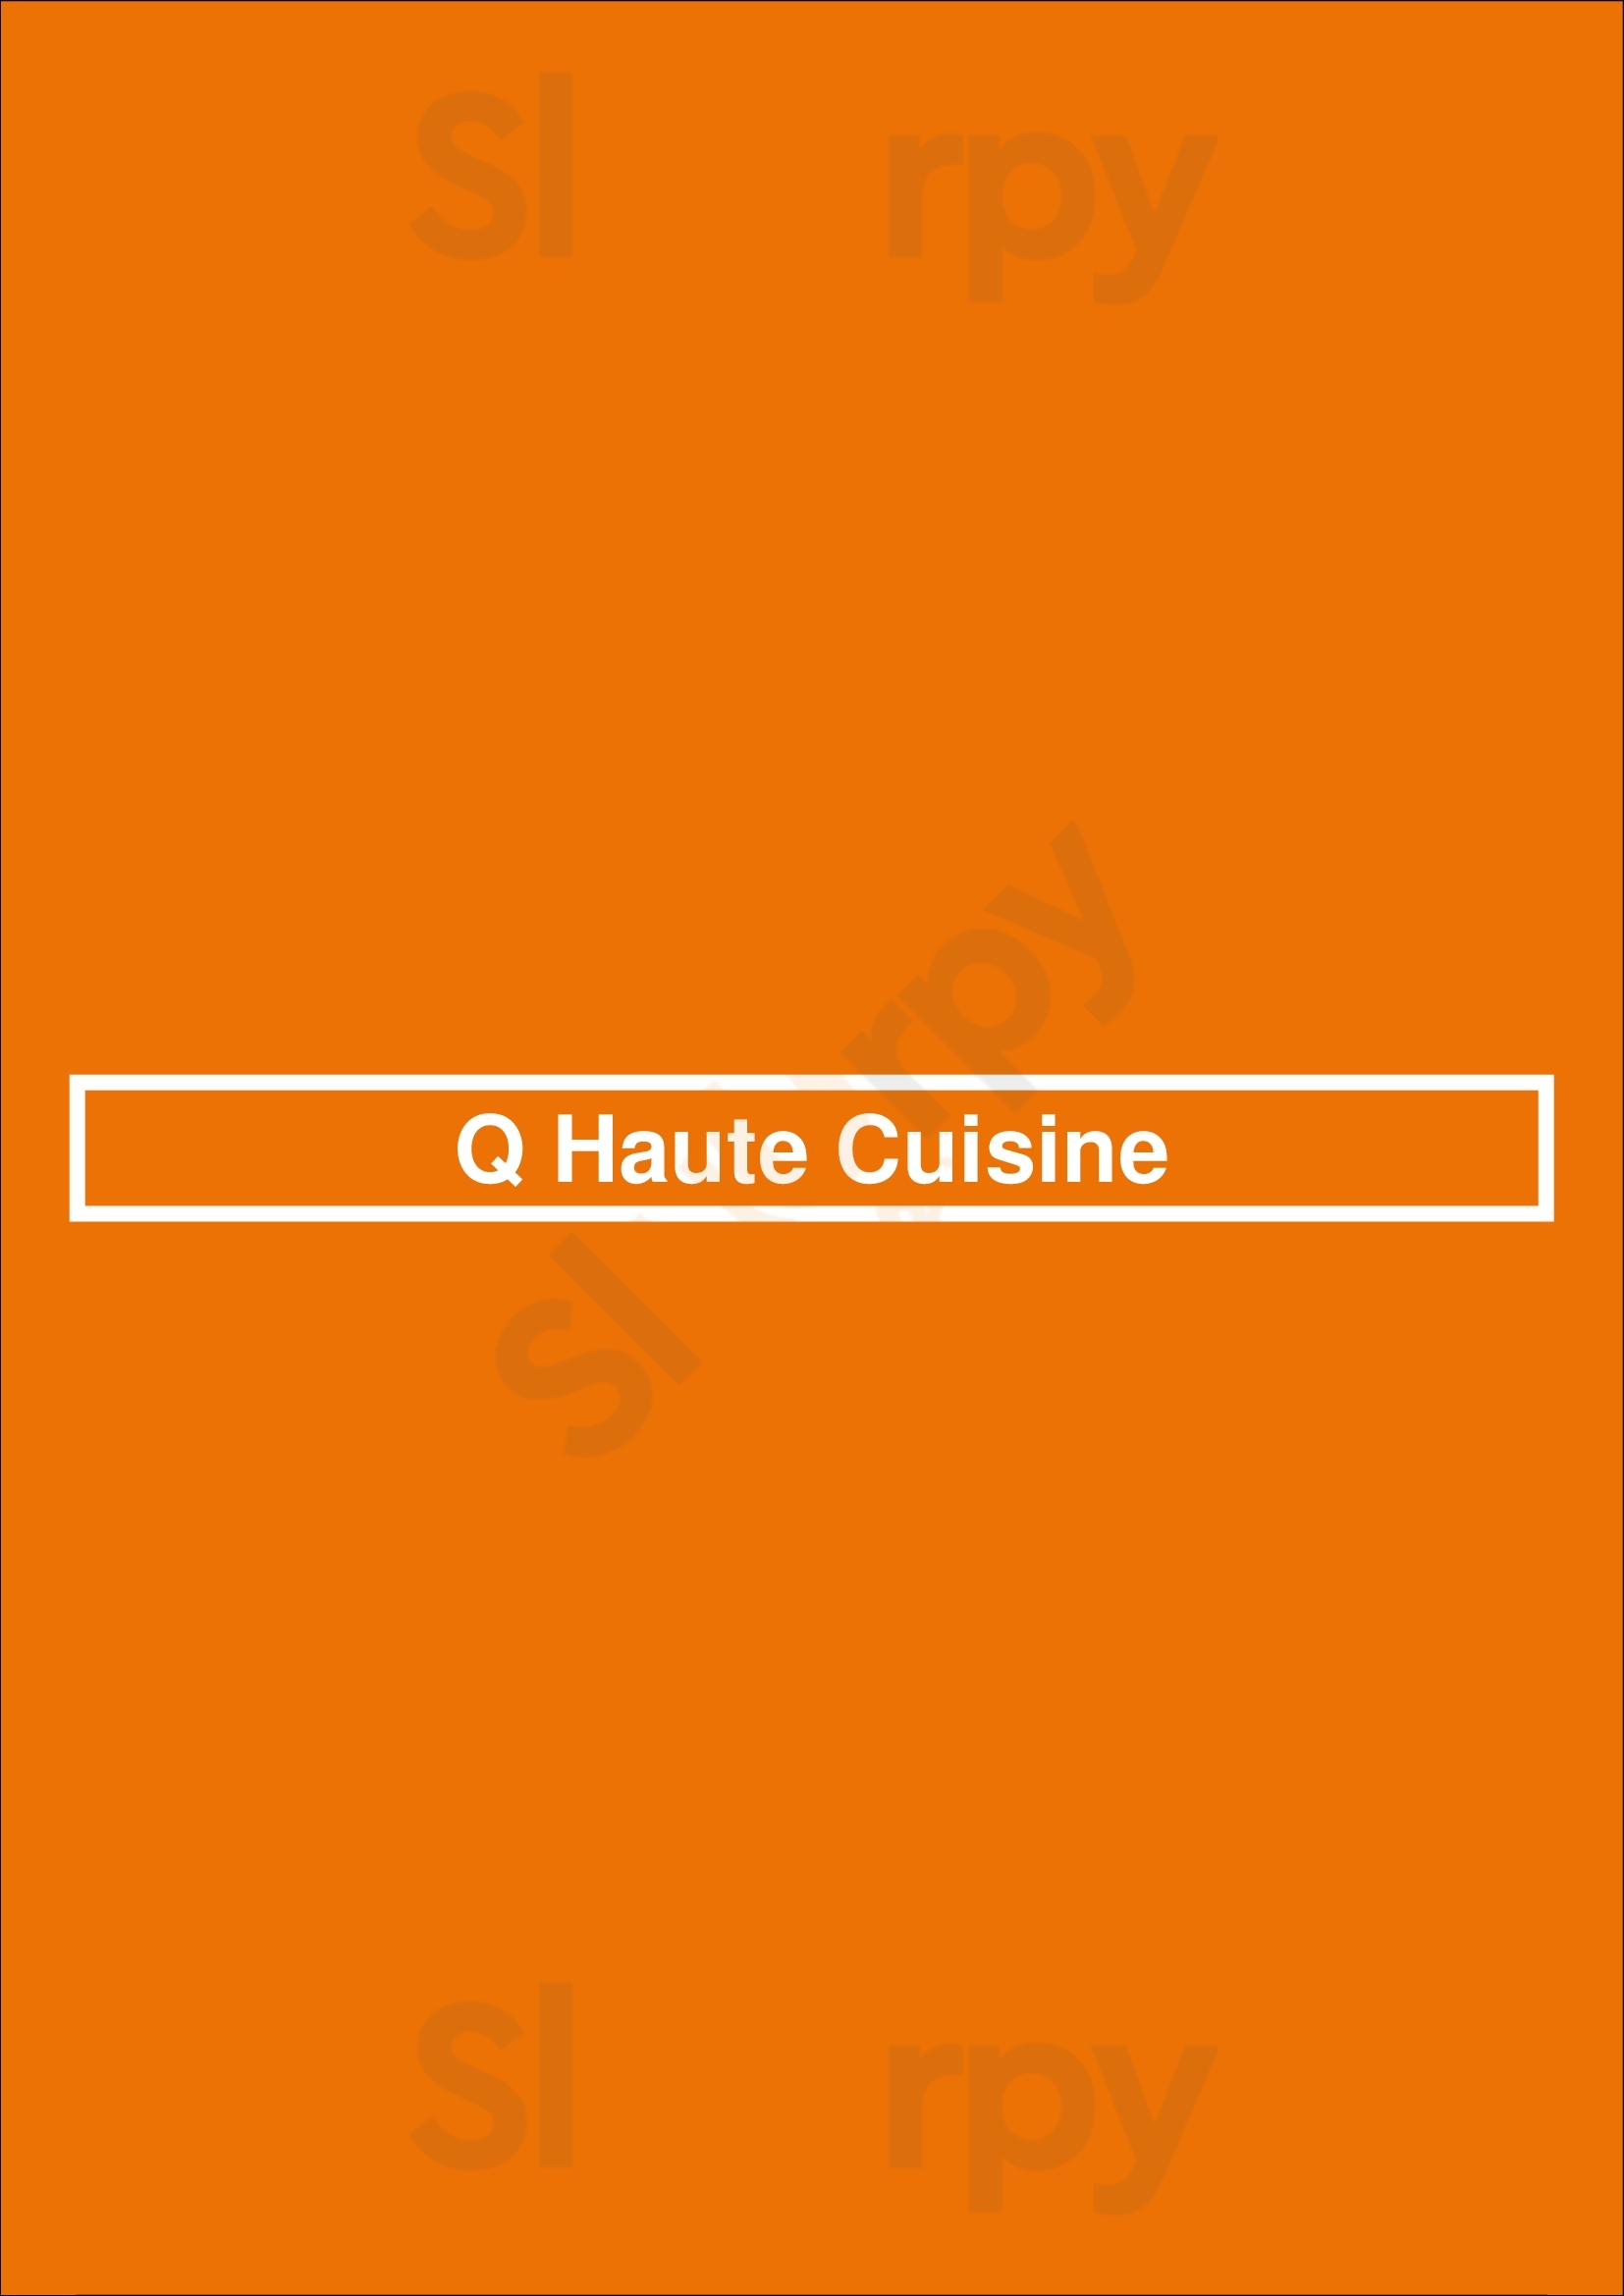 Q Haute Cuisine Calgary Menu - 1